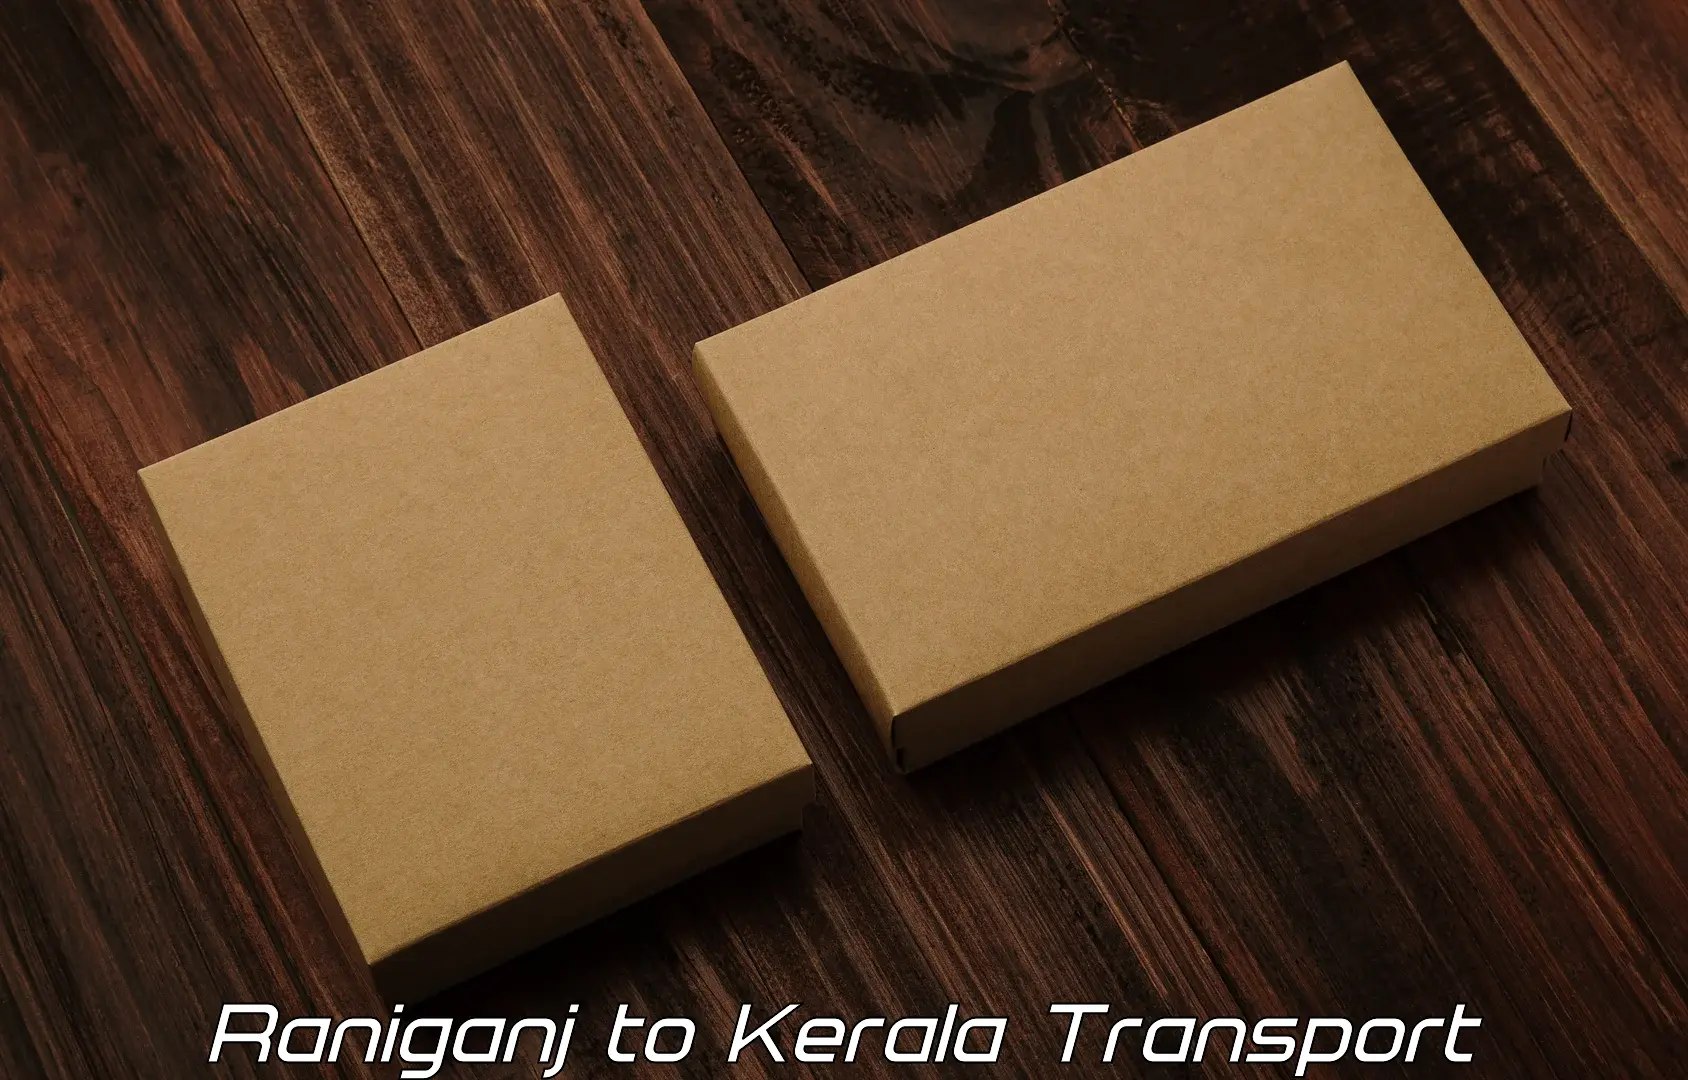 Nearest transport service Raniganj to Kothamangalam